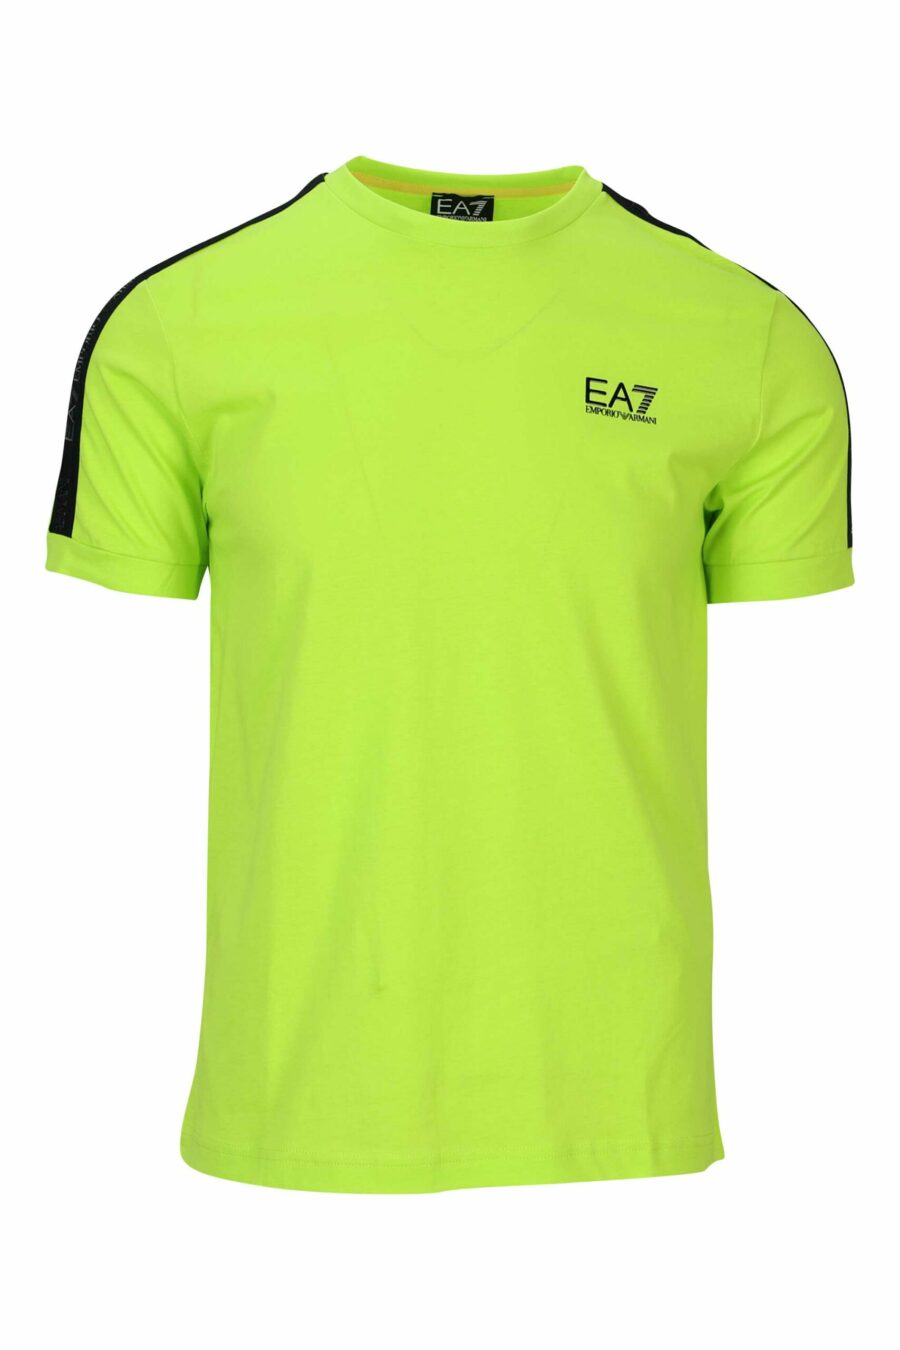 T-shirt verde lima com mini-logotipo preto "lux identity" - 8058947490943 scaled